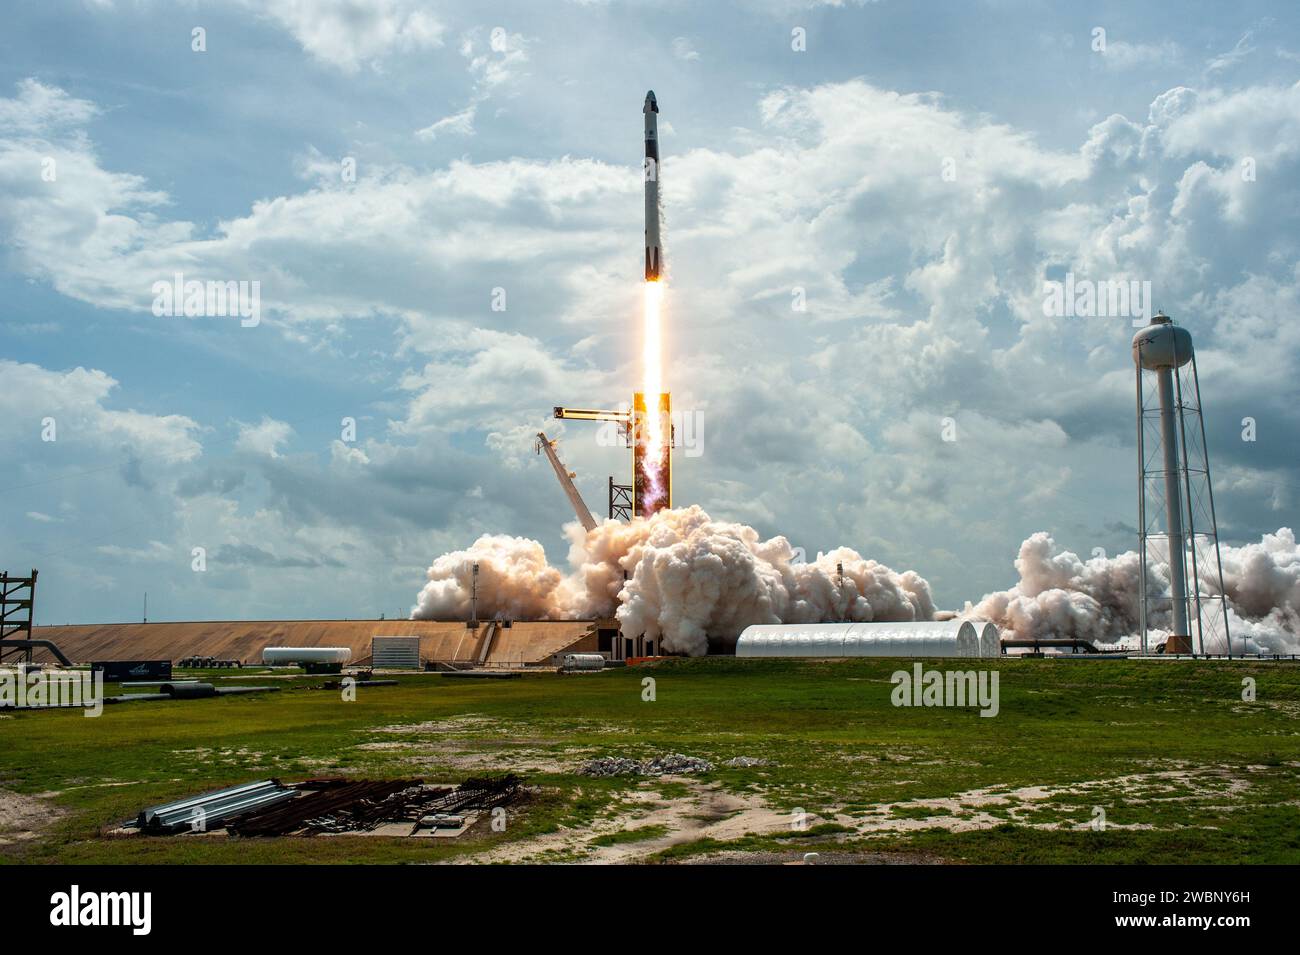 Un razzo SpaceX Falcon 9 si alza verso l'alto dopo il decollo dallo storico Launch Complex 39A presso il Kennedy Space Center della NASA in Florida il 30 maggio 2020, portando gli astronauti della NASA Robert Behnken e Douglas Hurley alla stazione spaziale Internazionale in una capsula SpaceX Crew Dragon per la missione SpaceX Demo-2 dell'agenzia. Il decollo è avvenuto alle 3:22 PM EDT. Behnken e Hurley sono i primi astronauti a lanciare dal suolo statunitense alla stazione spaziale dalla fine del programma Space Shuttle nel 2011. Parte del Commercial Crew Program della NASA, questo sarà il test finale di volo di SpaceX, spianando la strada all'agenc Foto Stock